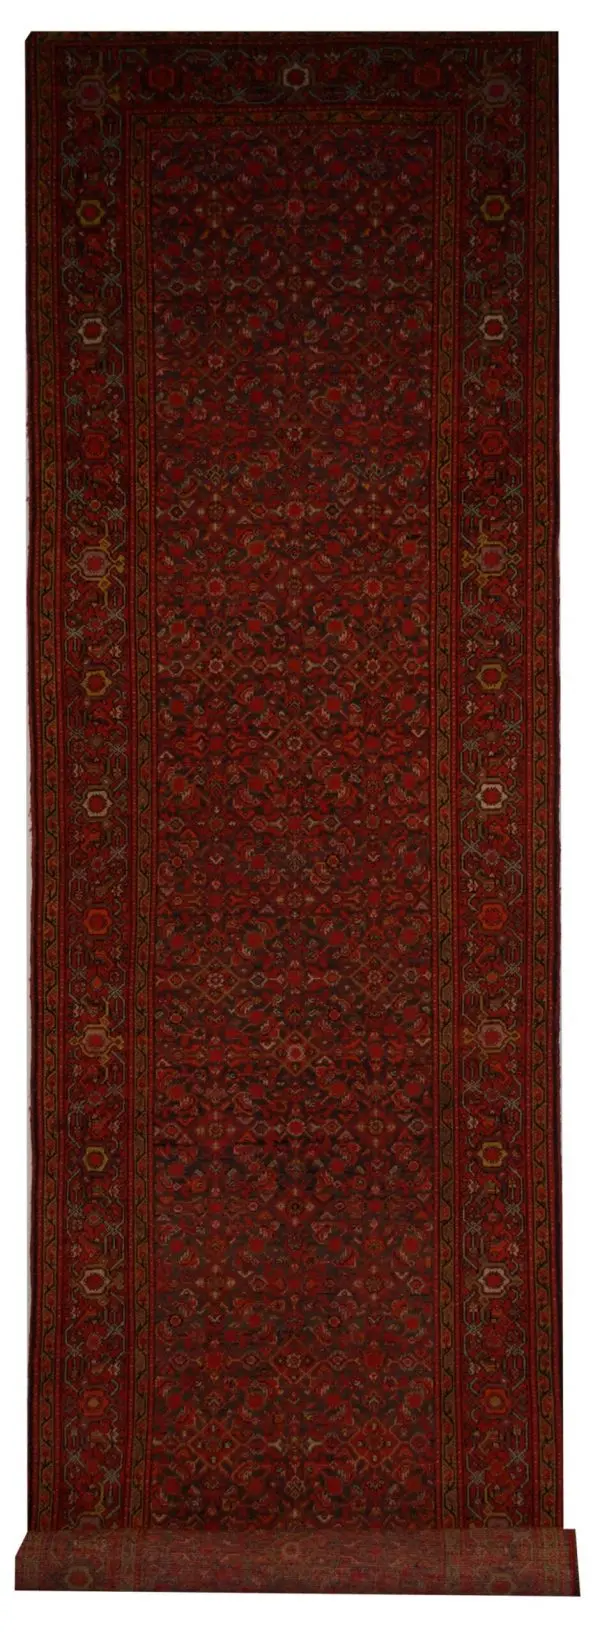 Antique Persian Malayer 3' 5" x 16' 3" - Shabahang Royal Carpet